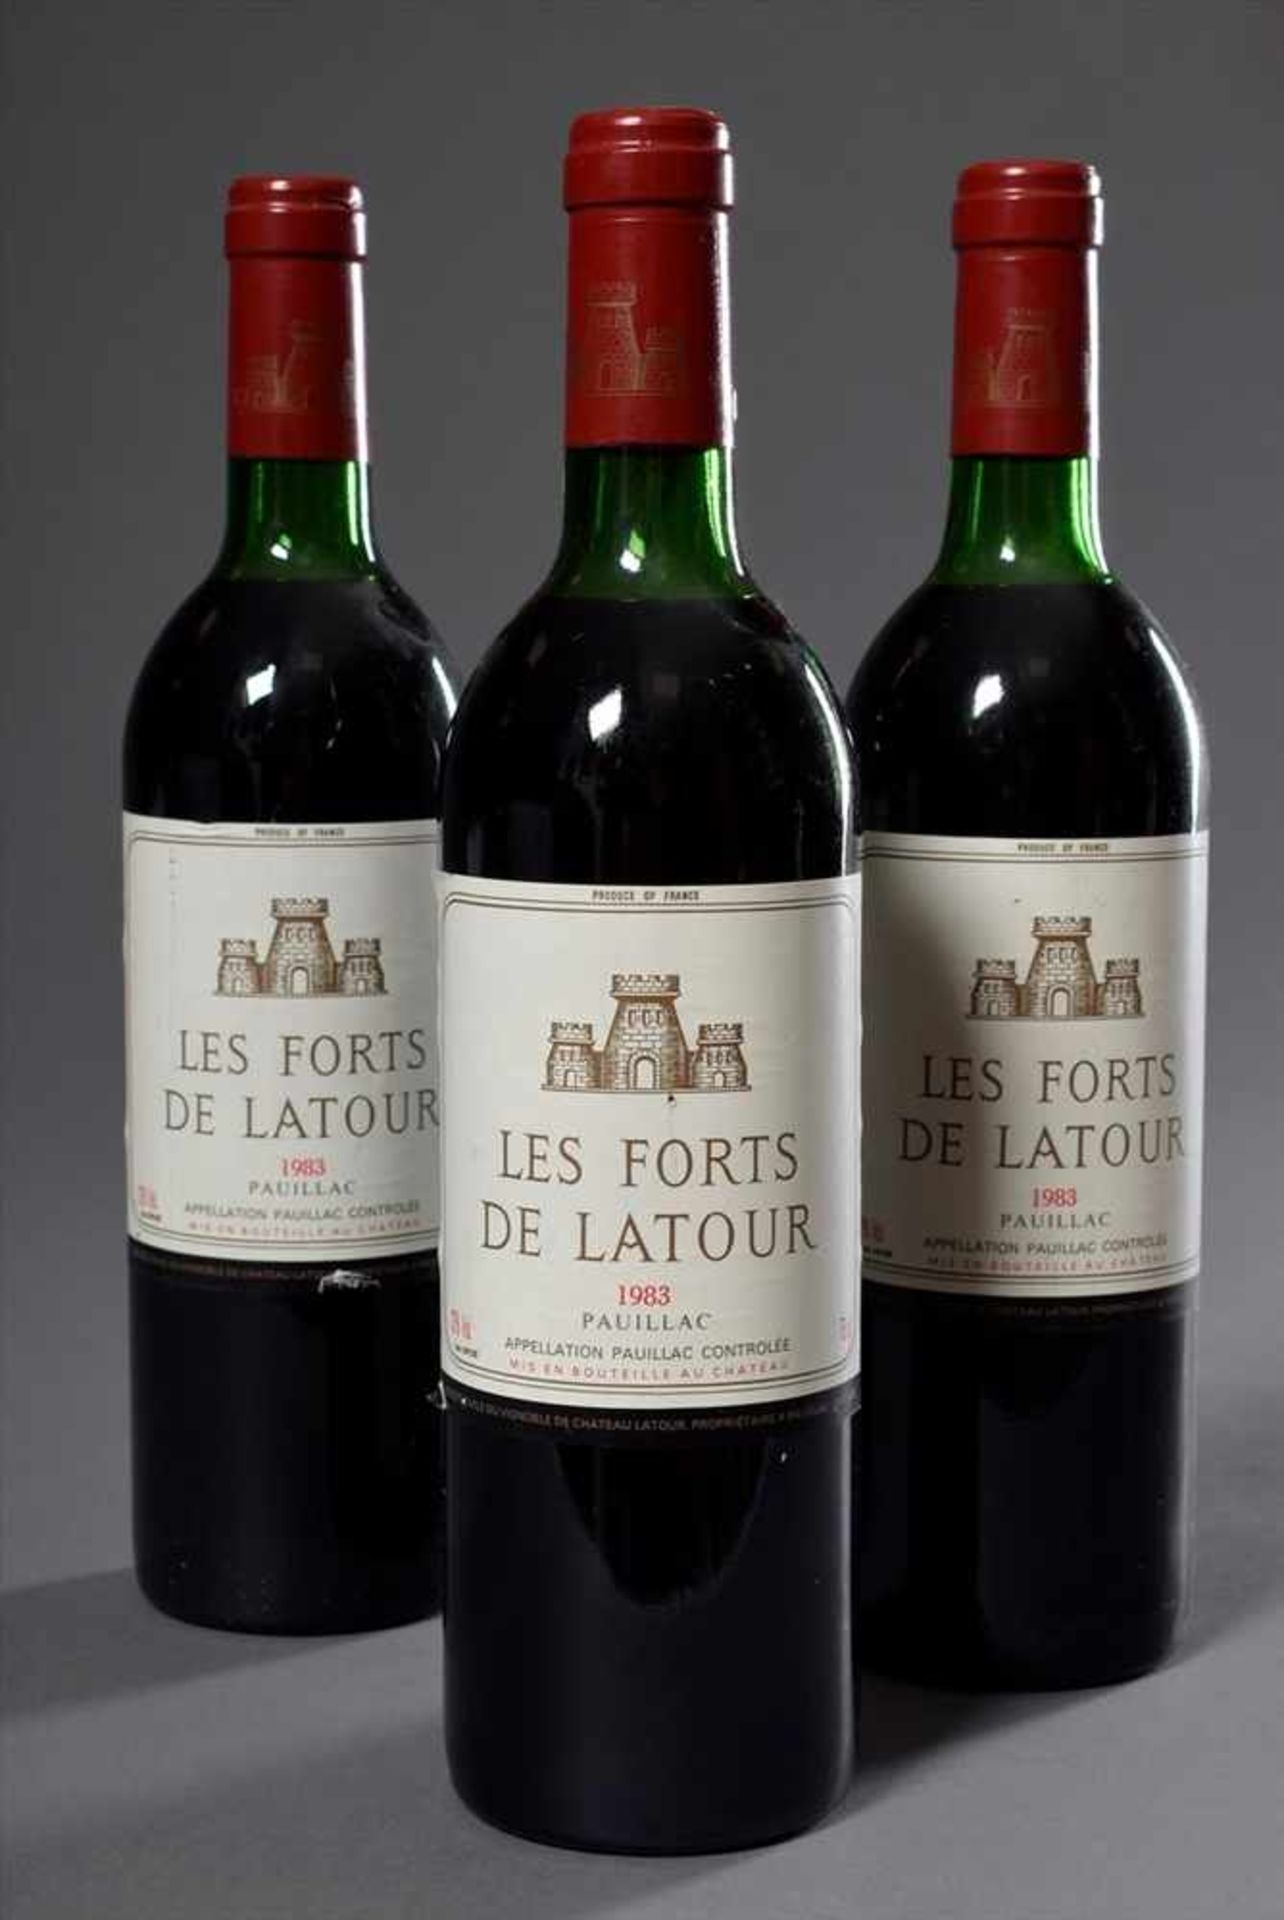 3 Flaschen Rotwein "Les Forts de Latours, Pauliac", 1983, Schlossabfüllung, enthält Sulfite3 bottles